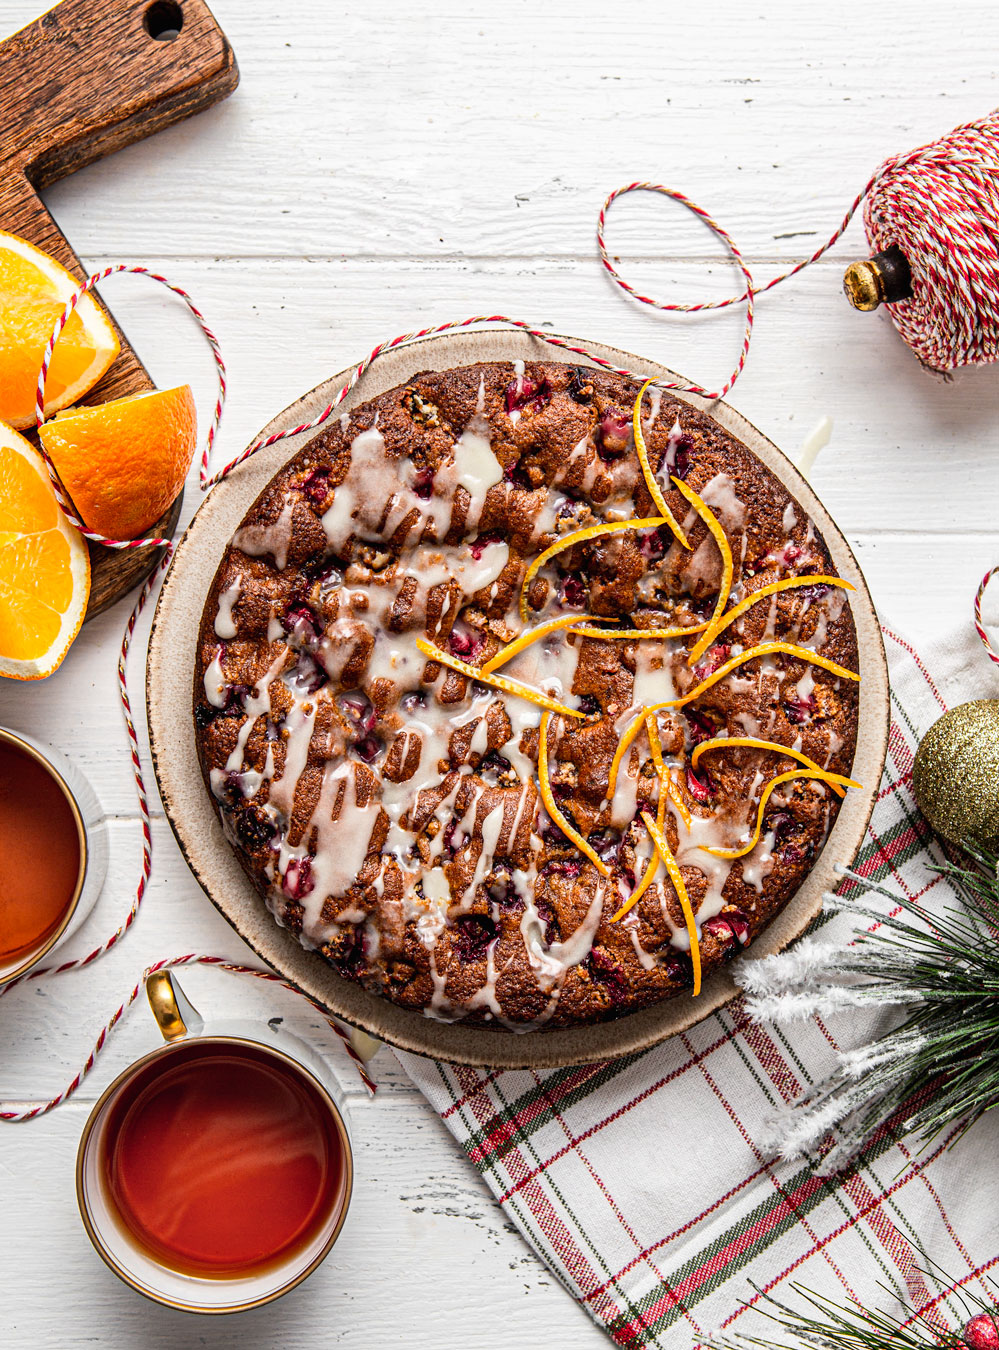  Cranberry Orange Cake with Orange Glaze christmas food styling